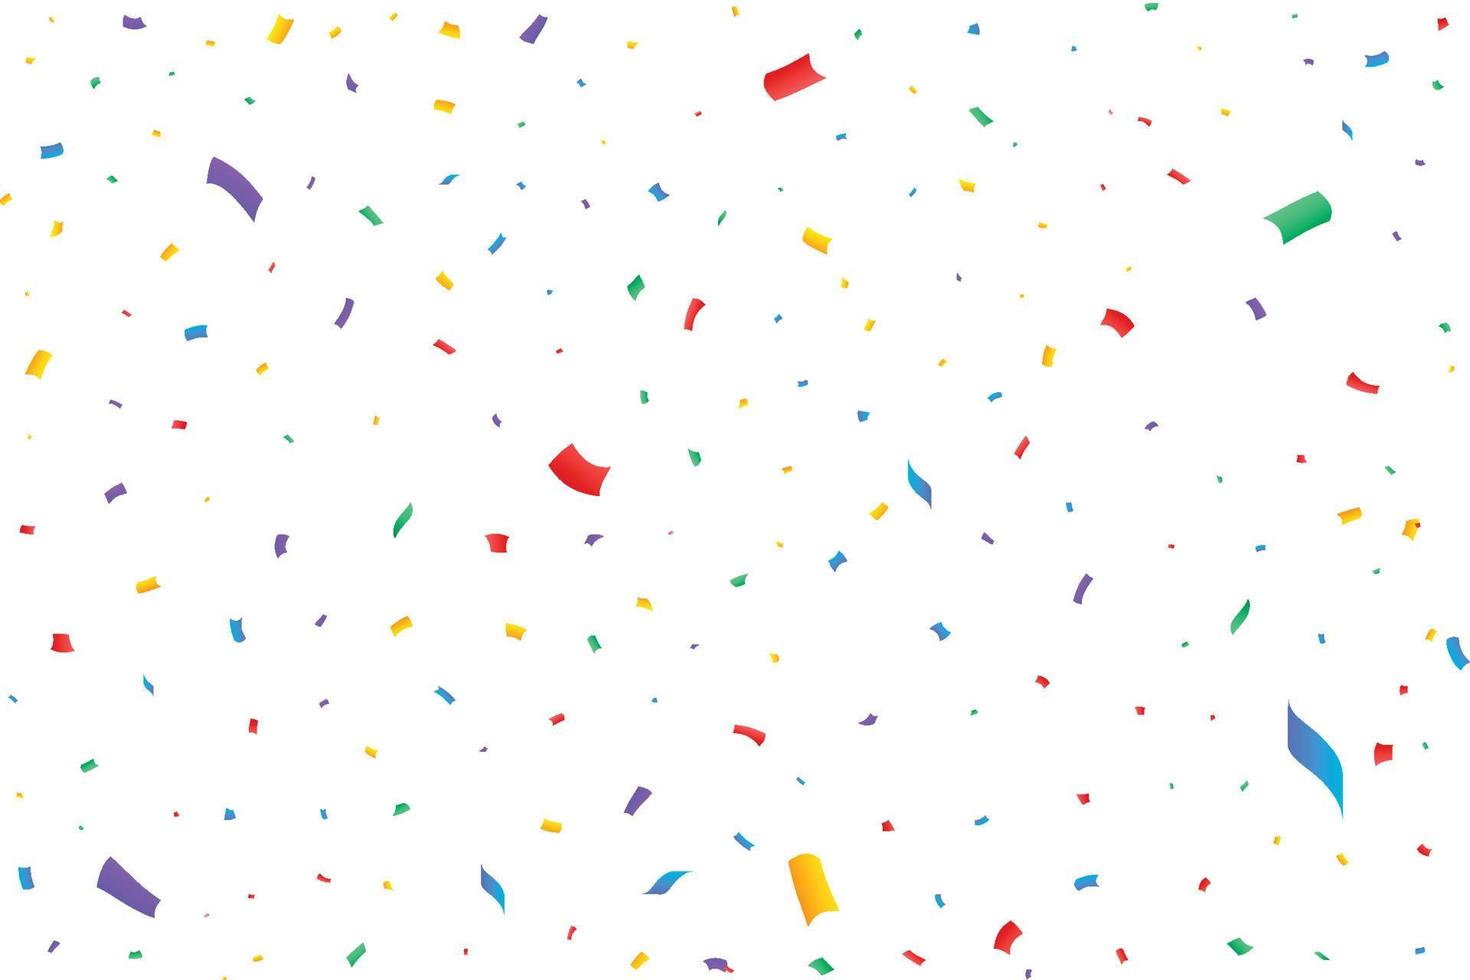 färgglada konfetti fallande illustration isolerad på transparent bakgrund. evenemang och jubileumsfirande. blått, rött, gult glitter faller. karneval inslag. enkel färgglad konfetti faller. vektor